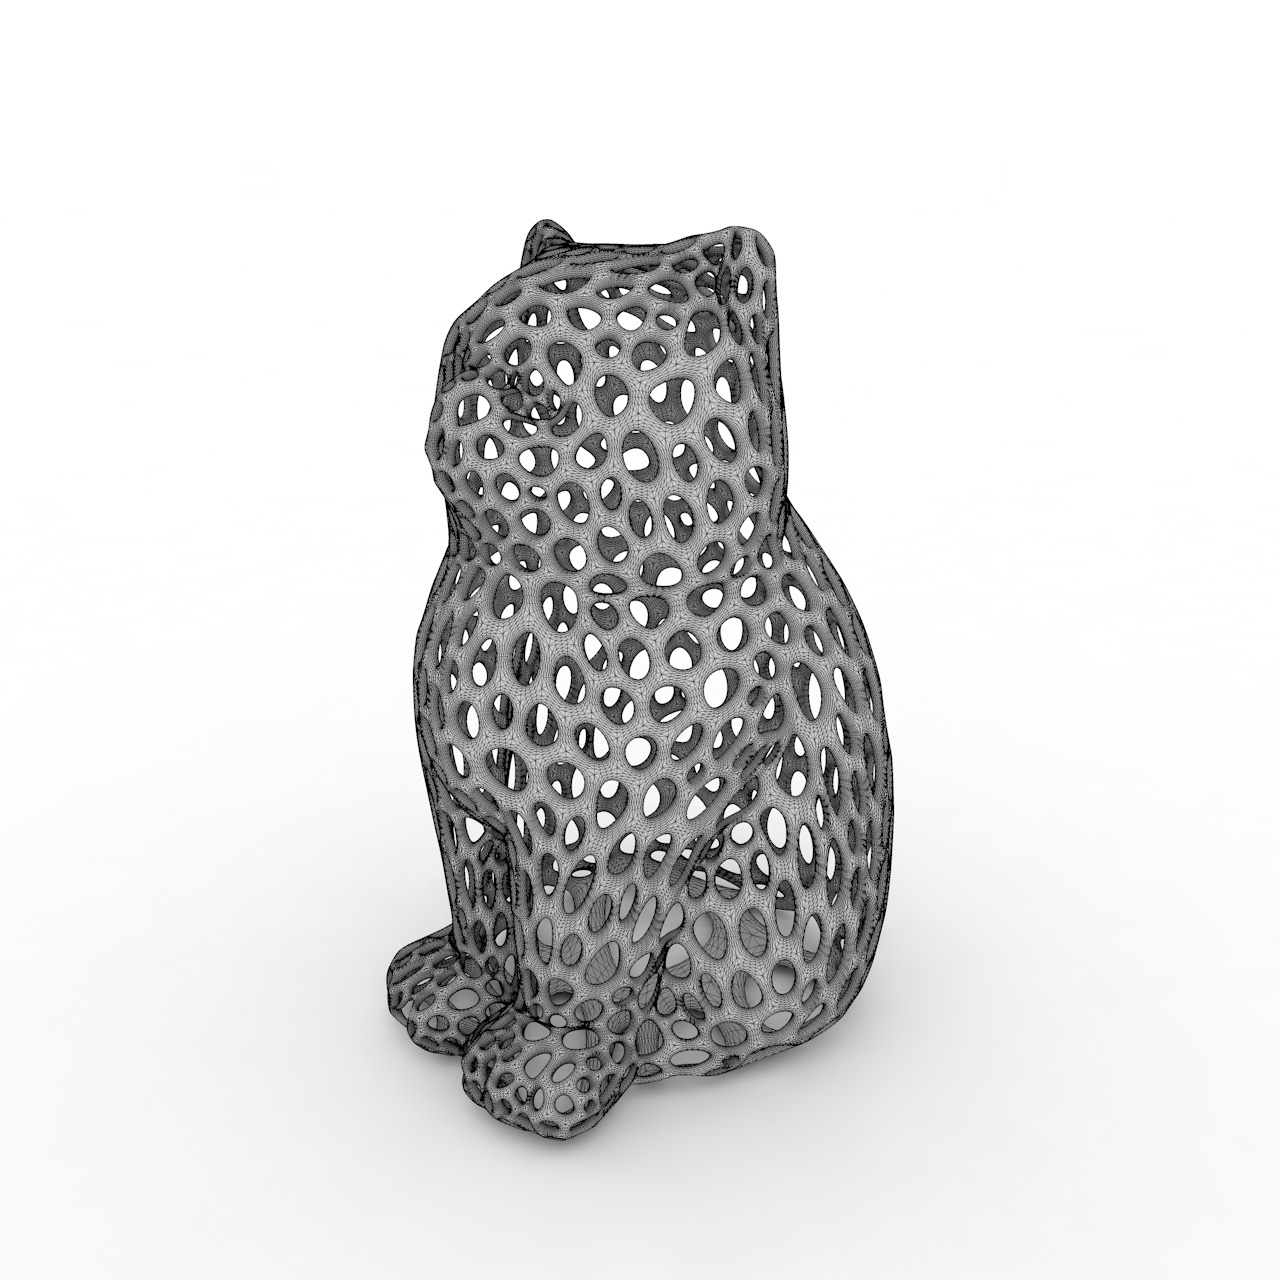 Cat Hollow Voronoi 3d-utskriftsmodell